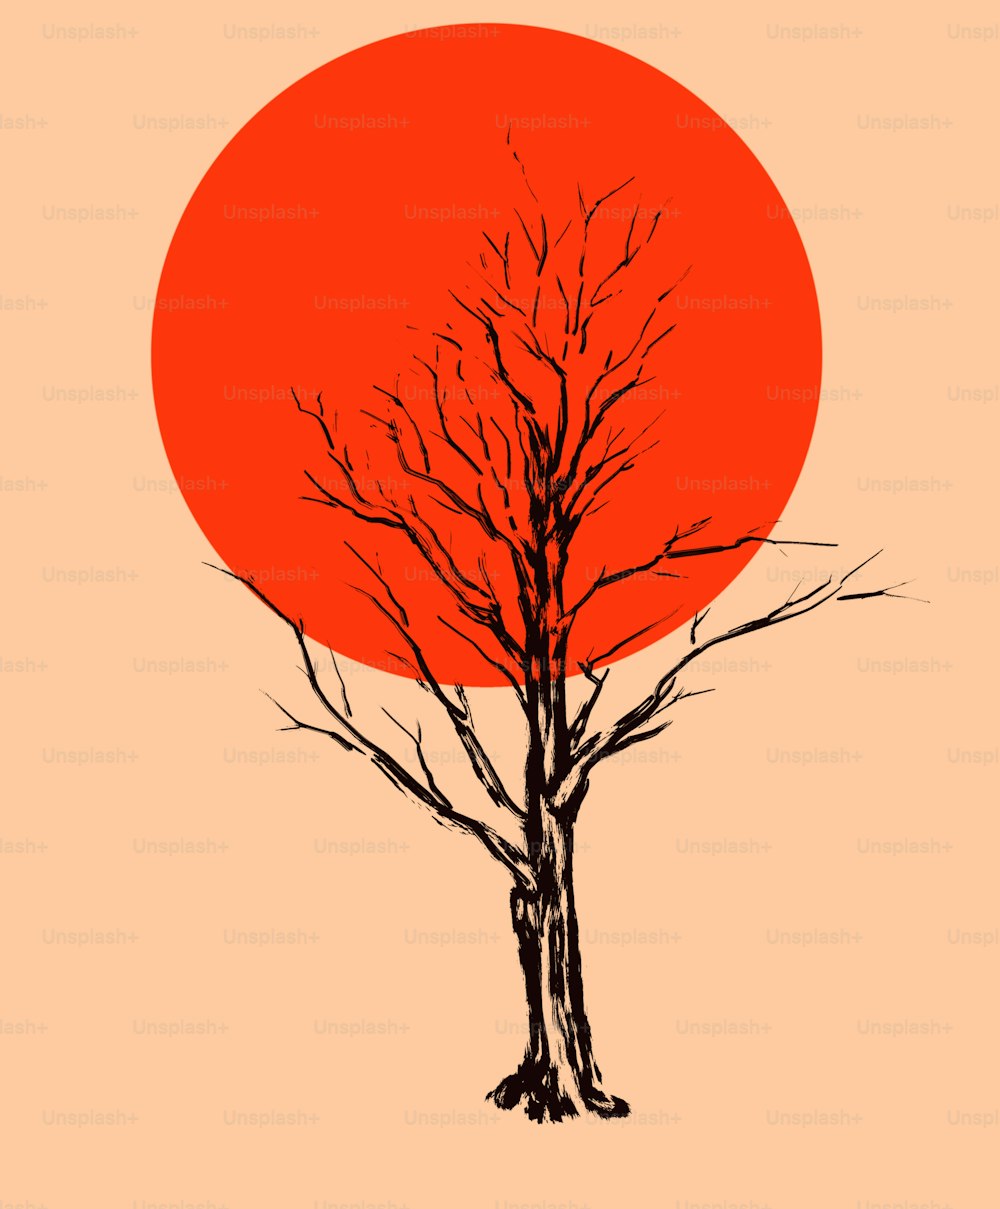 Ein vertrockneter Baum vor dem Hintergrund einer glühenden Sonnenscheibe. Seitenformat